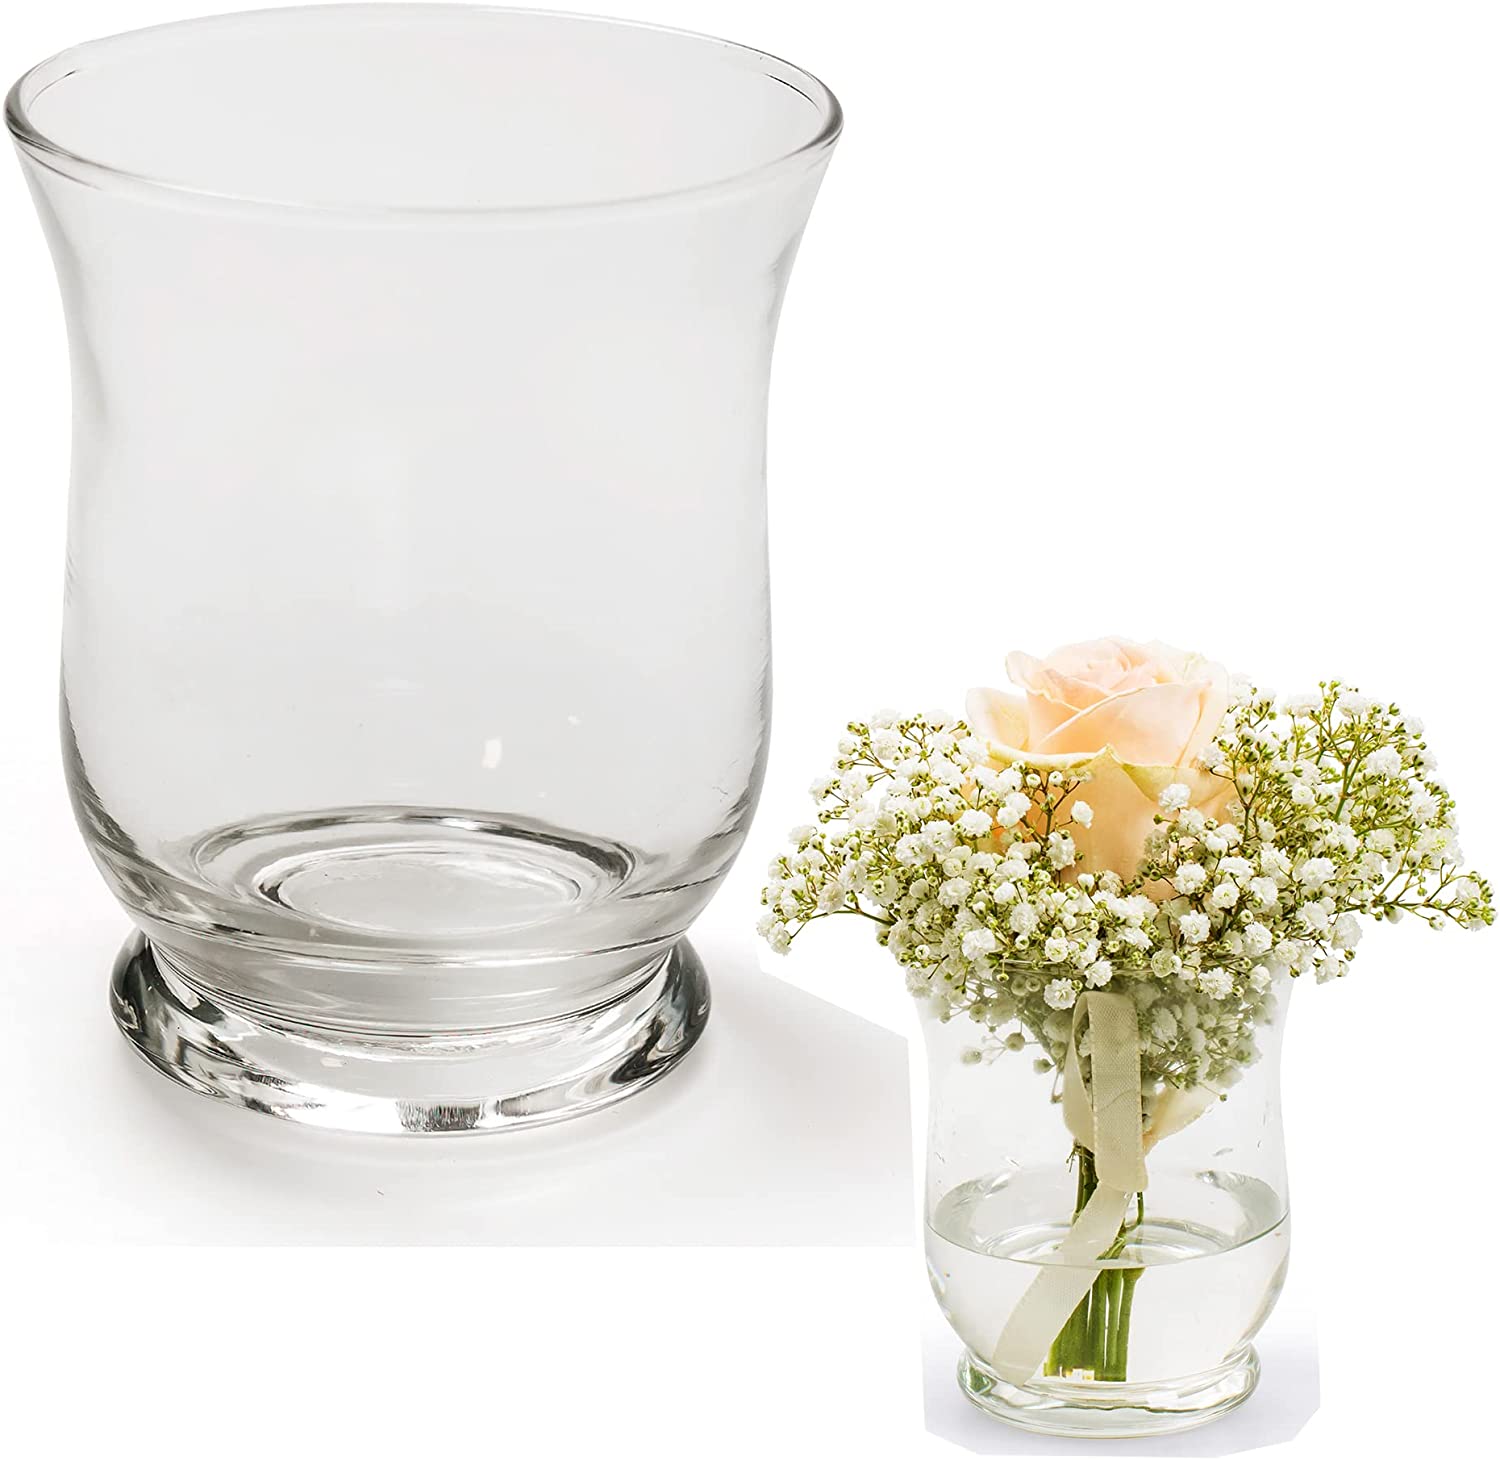 Annastore 12 x Small Glass Lantern or Vase Height 11 cm - Tea Light Holders Glass Vase Table Vase Candle Holder